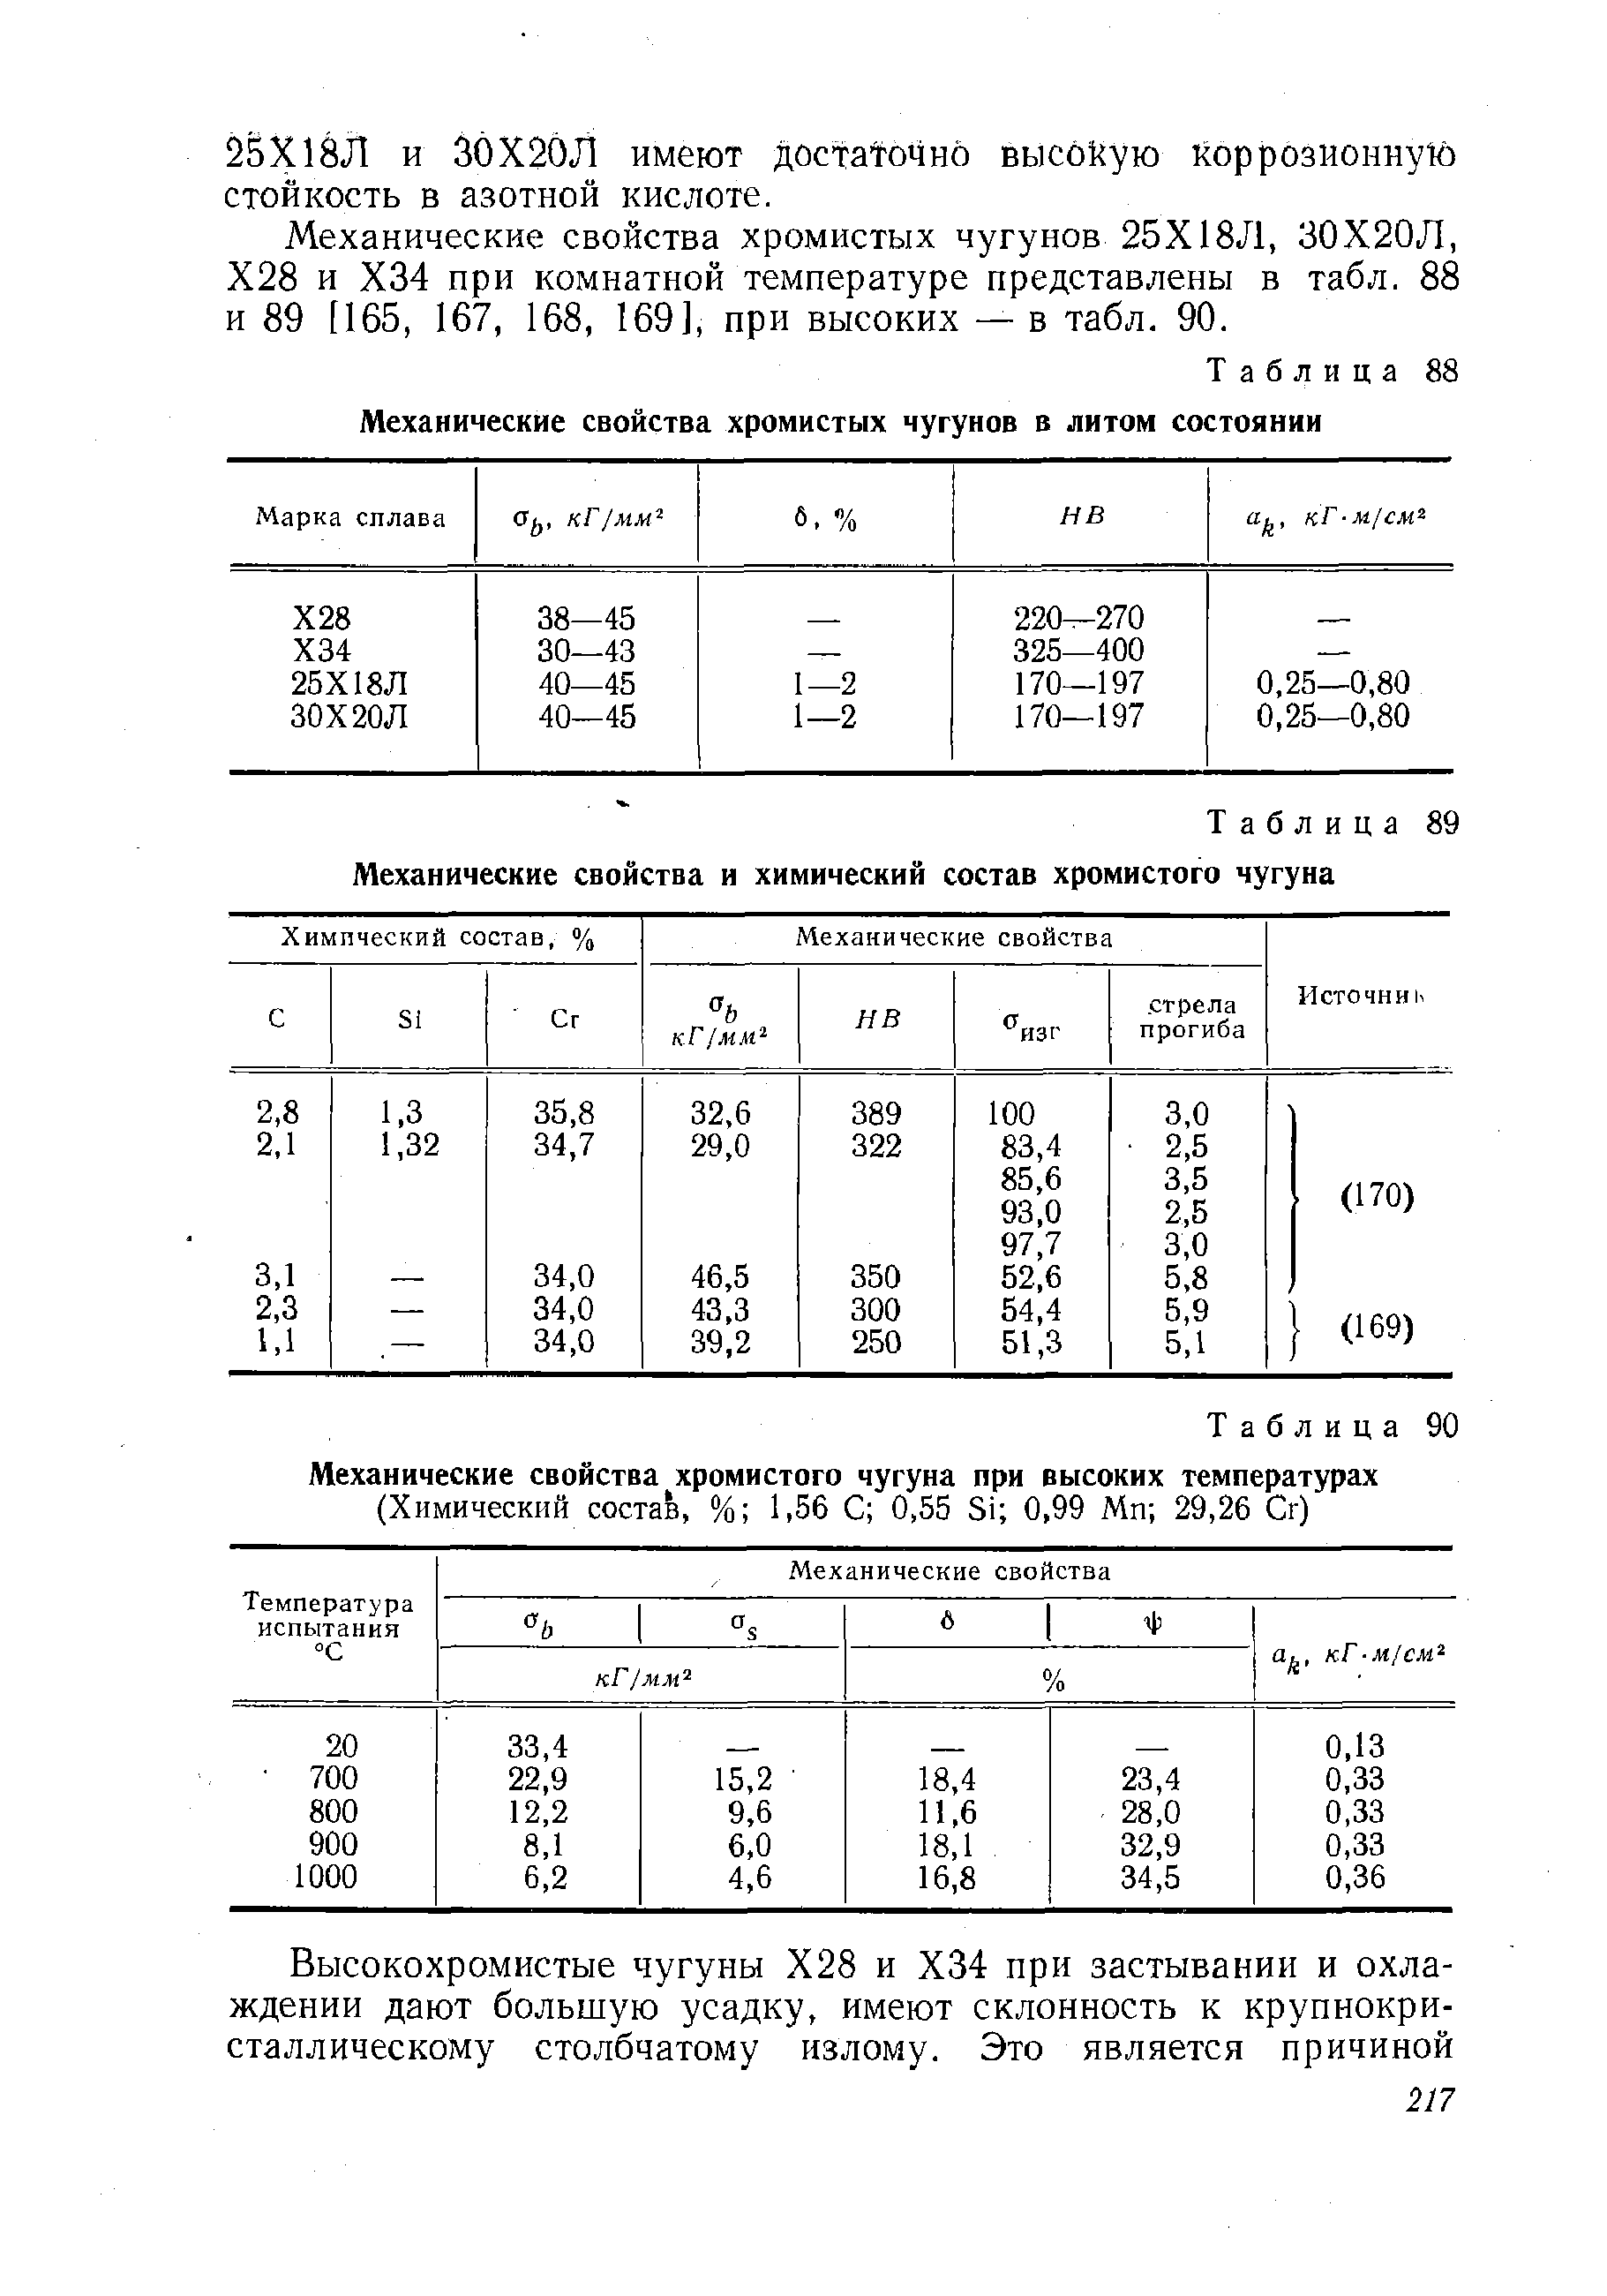 Таблица 89 Механические свойства и химический состав хромистого чугуна
